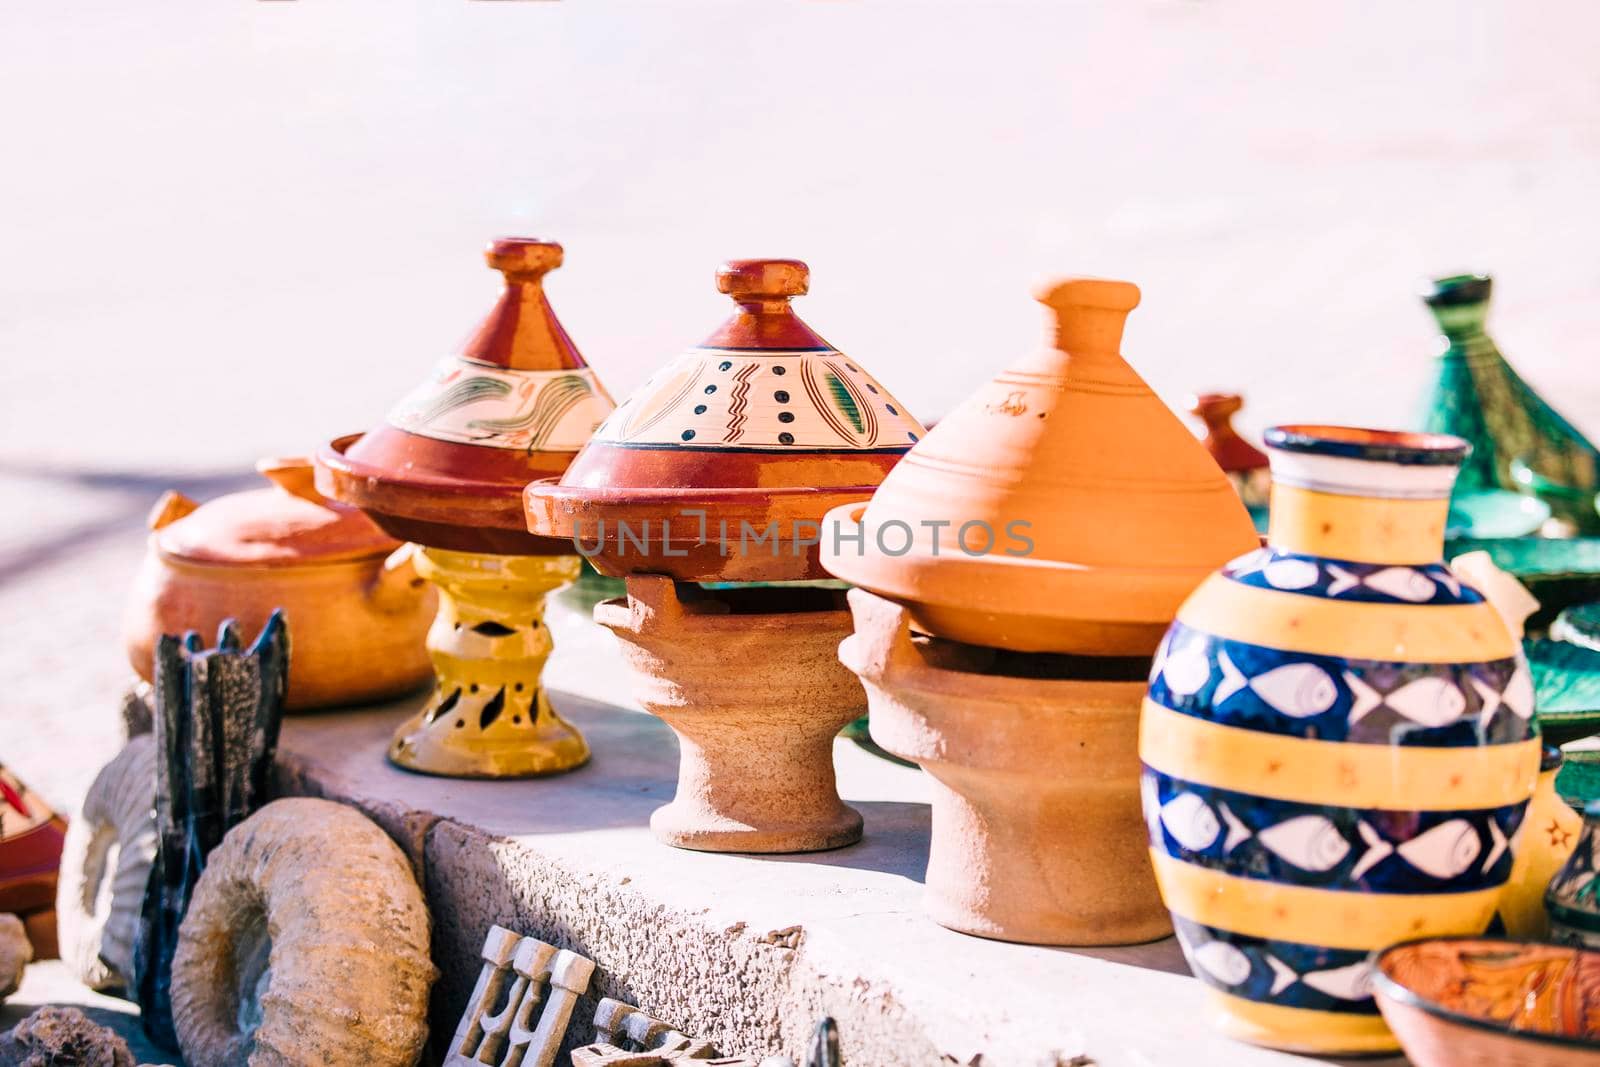 clay pots market morocco by Zahard